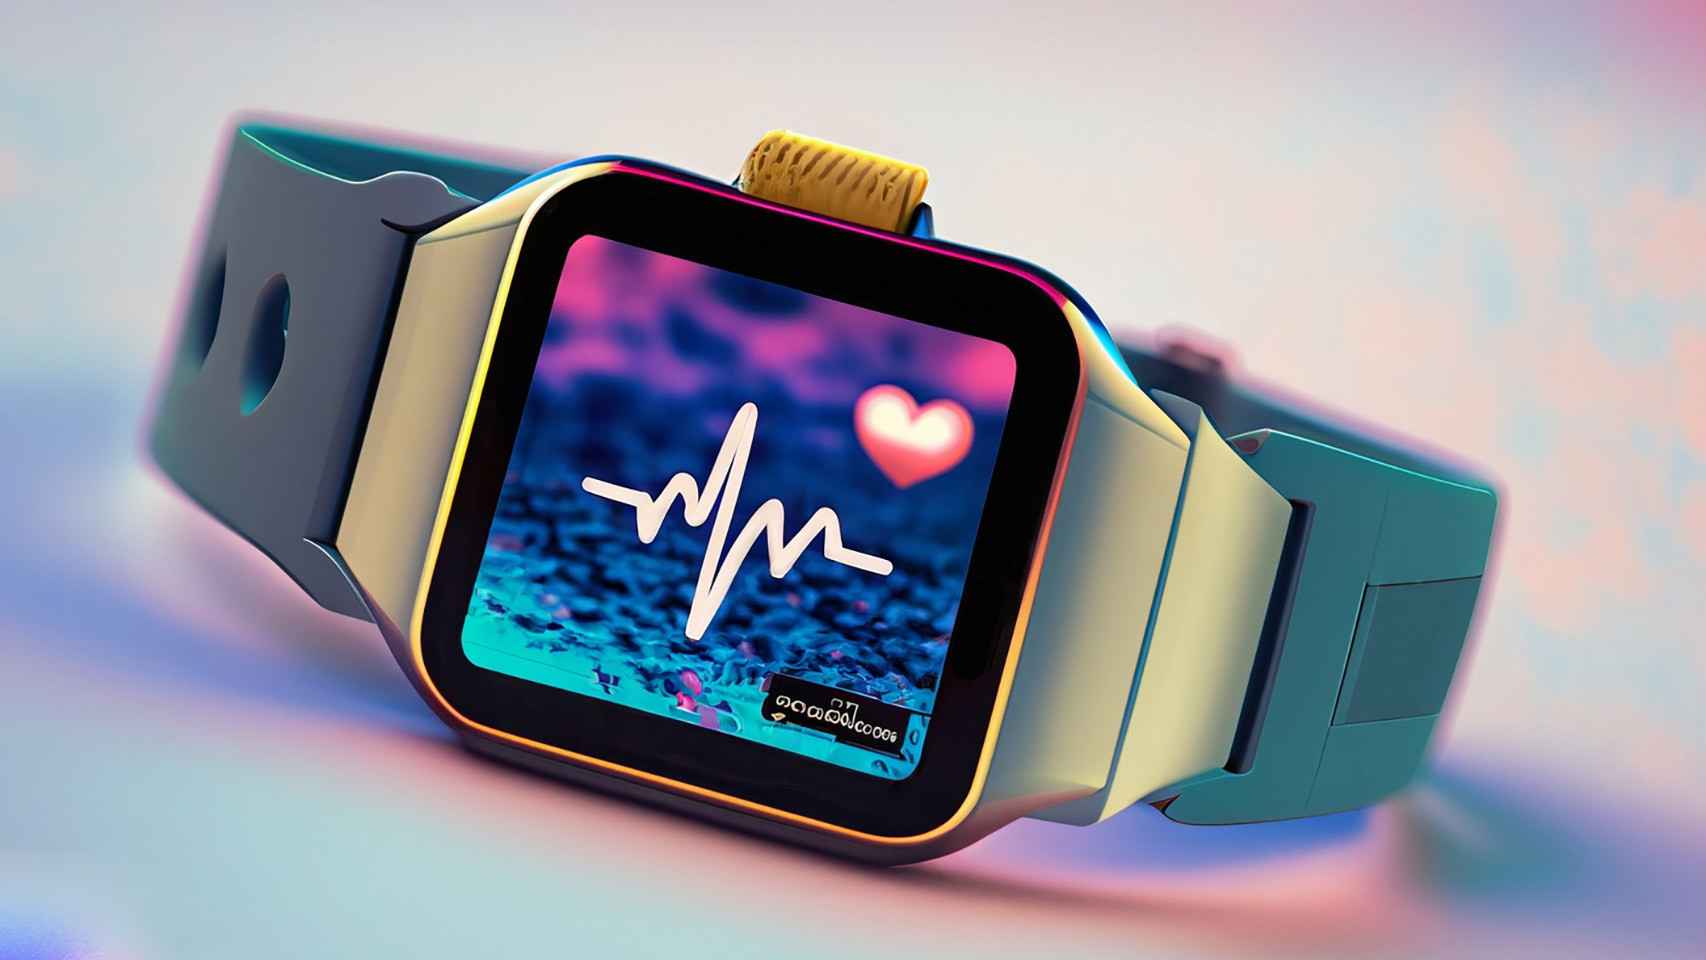 Los mejores smartwatches con lector ECG para electrocardiogramas